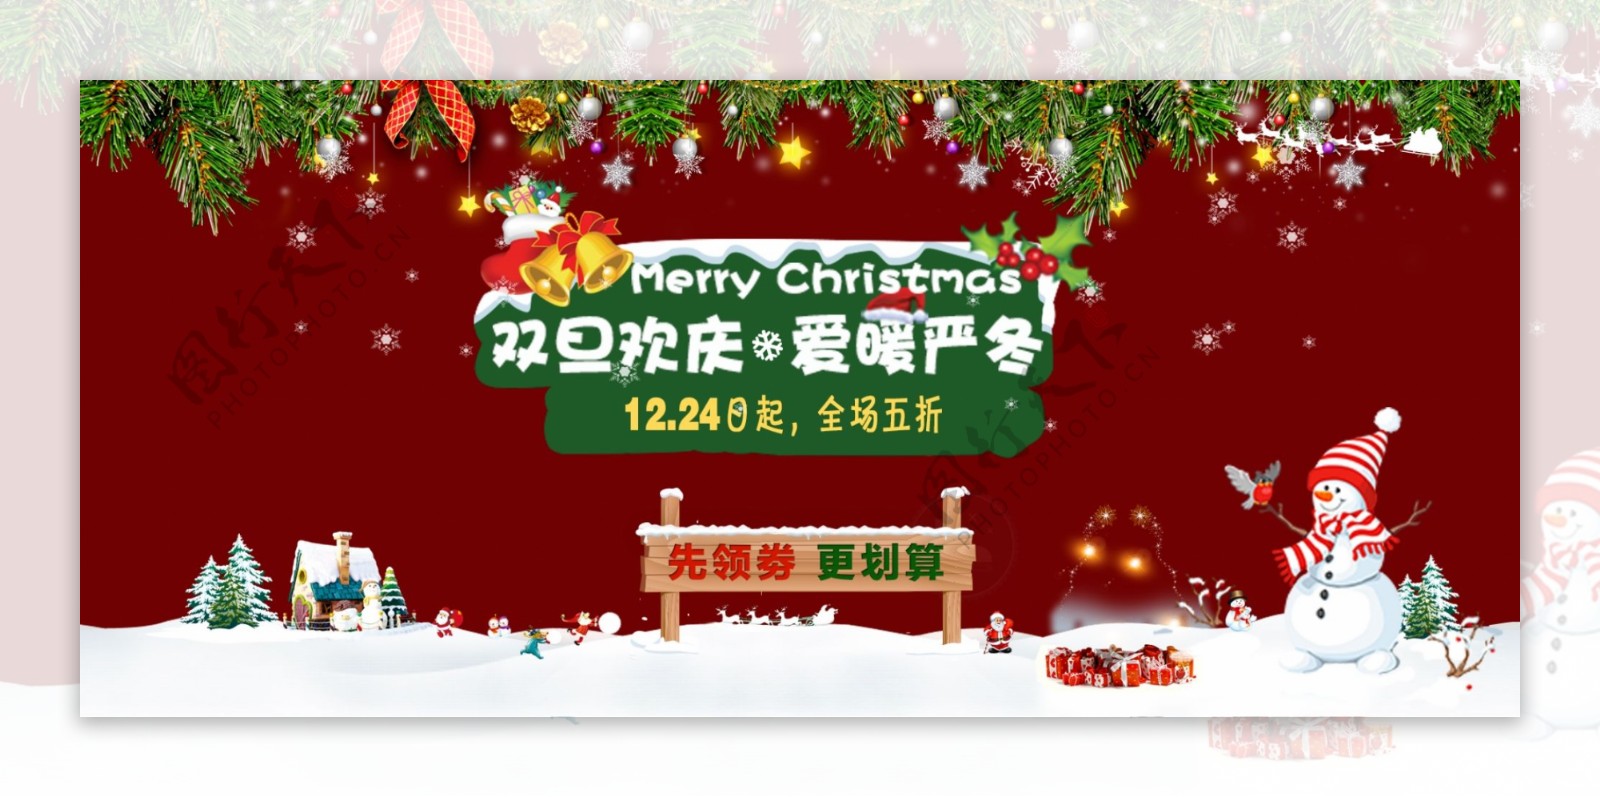 淘宝电商双旦欢庆圣诞节雪人促销海报